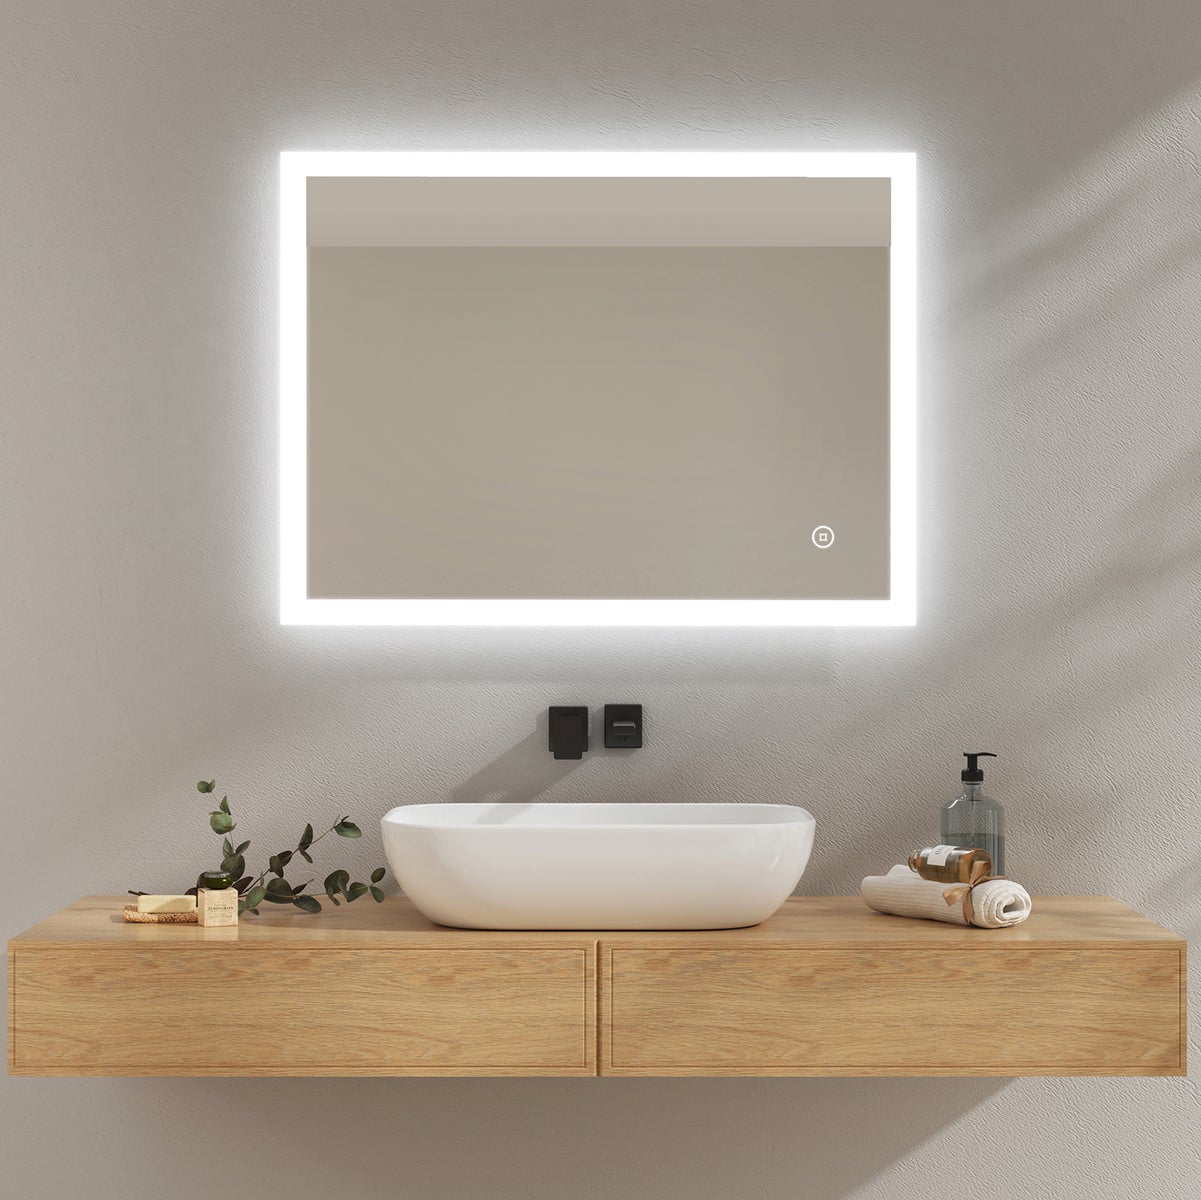 EMKE Badspiegel mit Beleuchtung, 80x60cm, Kaltweißes Licht, Beschlagfrei